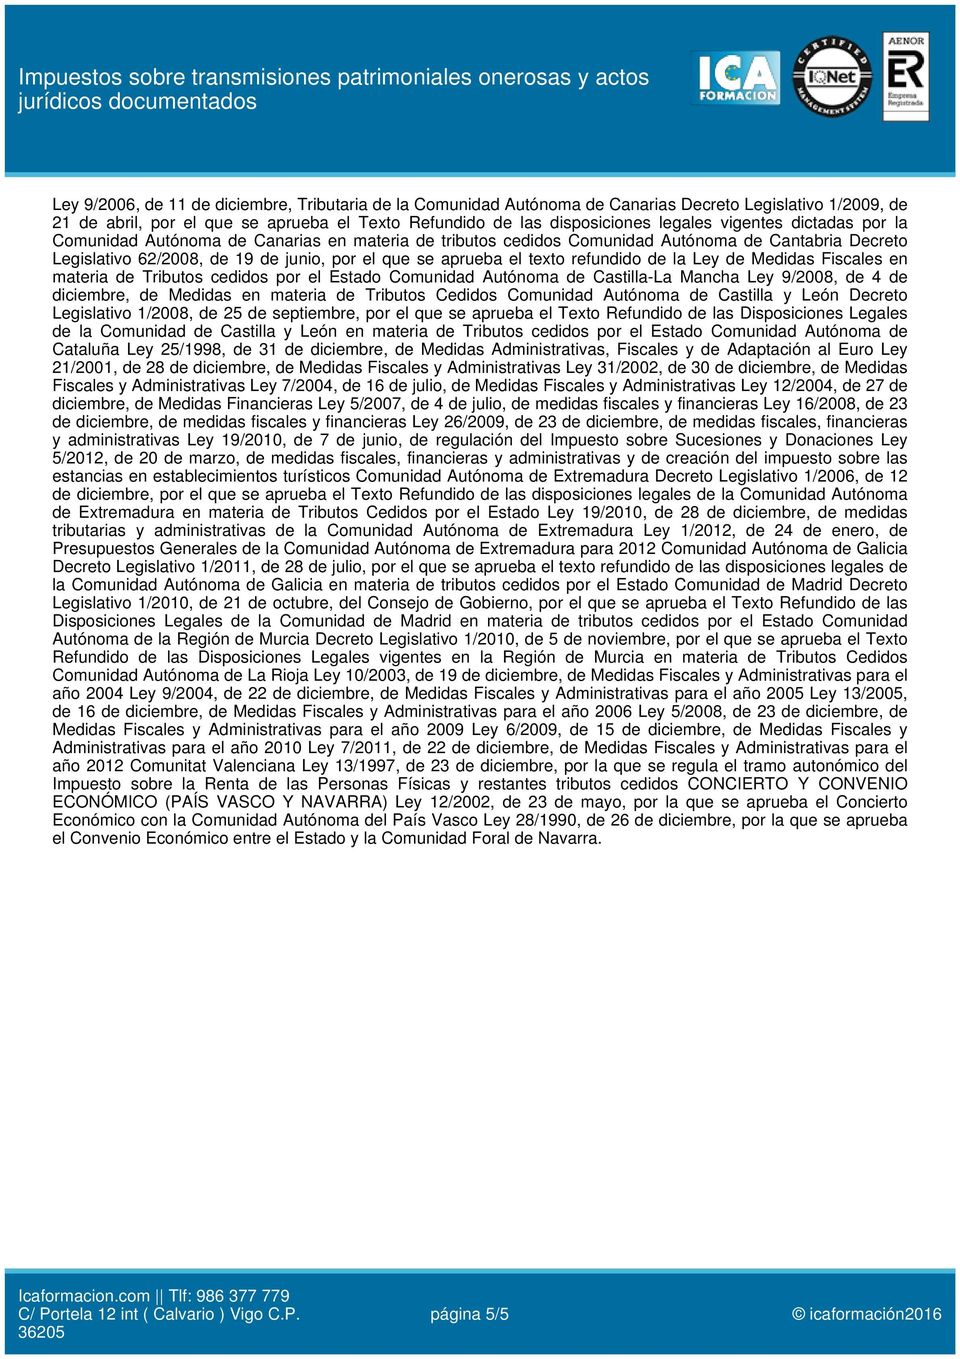 refundido de la Ley de Medidas Fiscales en materia de Tributos cedidos por el Estado Comunidad Autónoma de Castilla-La Mancha Ley 9/2008, de 4 de diciembre, de Medidas en materia de Tributos Cedidos